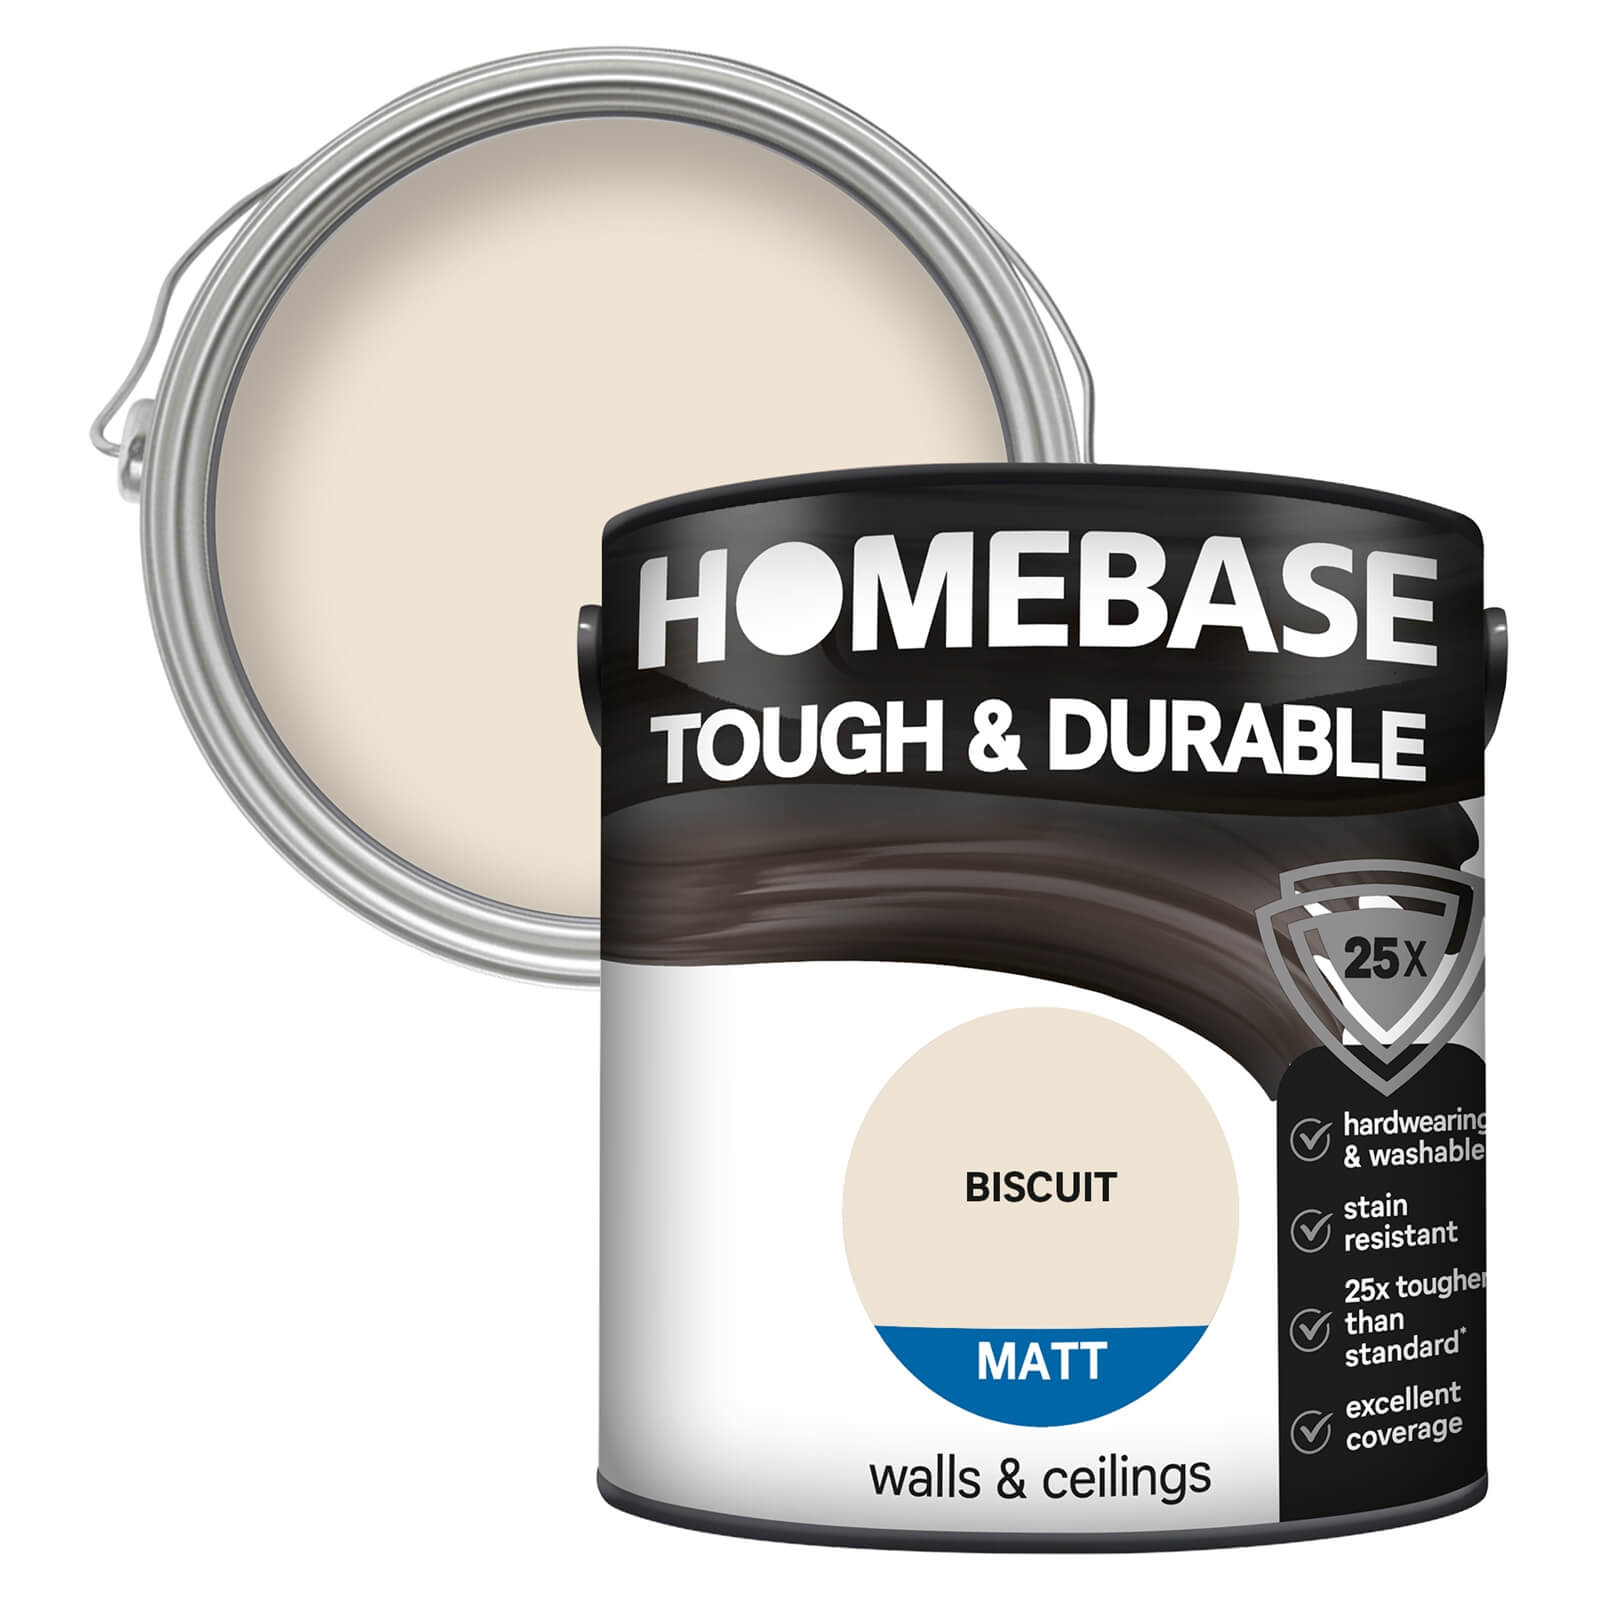 Homebase Tough & Durable Matt Emulsion Paint Biscuit - 2.5L